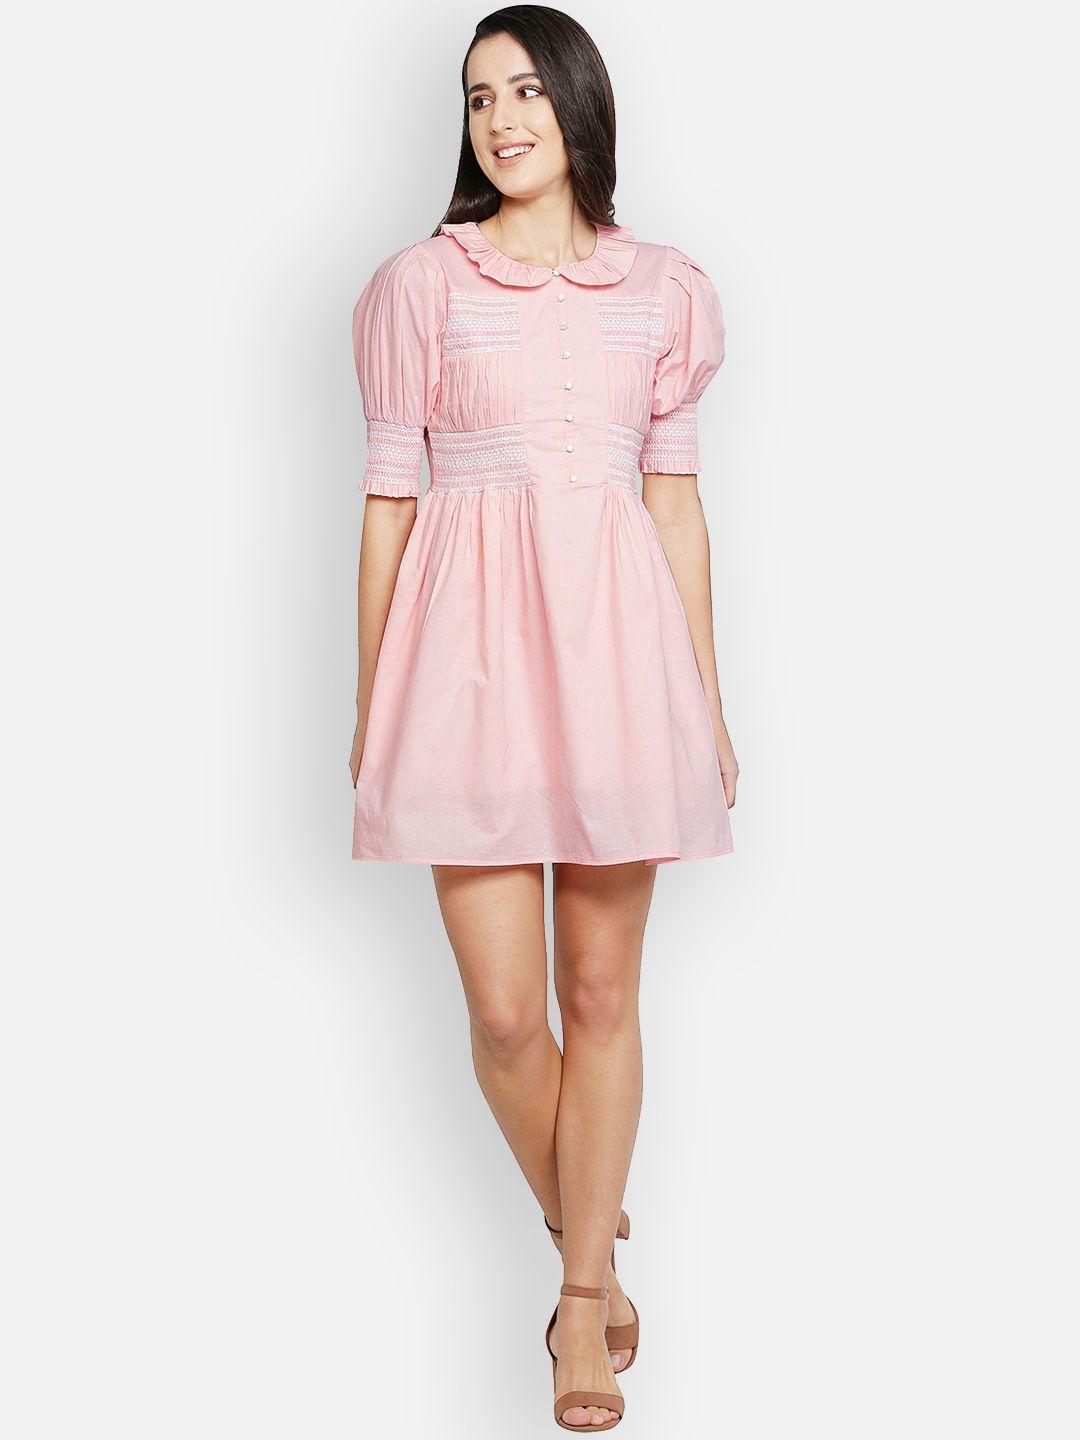 blanc9 pink peter pan collar cotton smocking dress